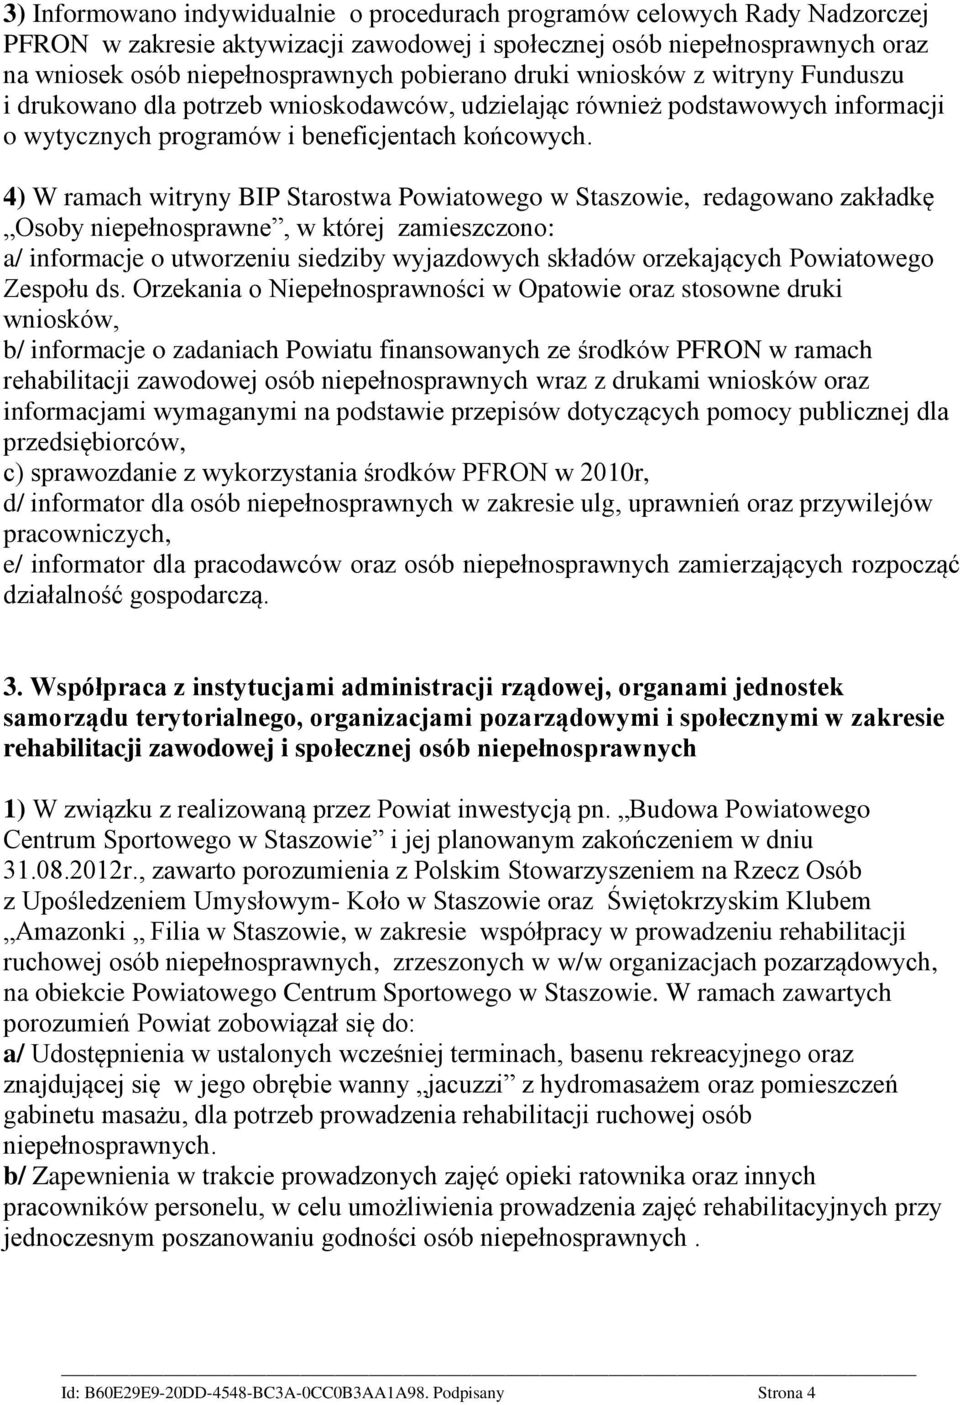 4) W ramach witryny BIP Starostwa Powiatowego w Staszowie, redagowano zakładkę Osoby niepełnosprawne, w której zamieszczono: a/ informacje o utworzeniu siedziby wyjazdowych składów orzekających